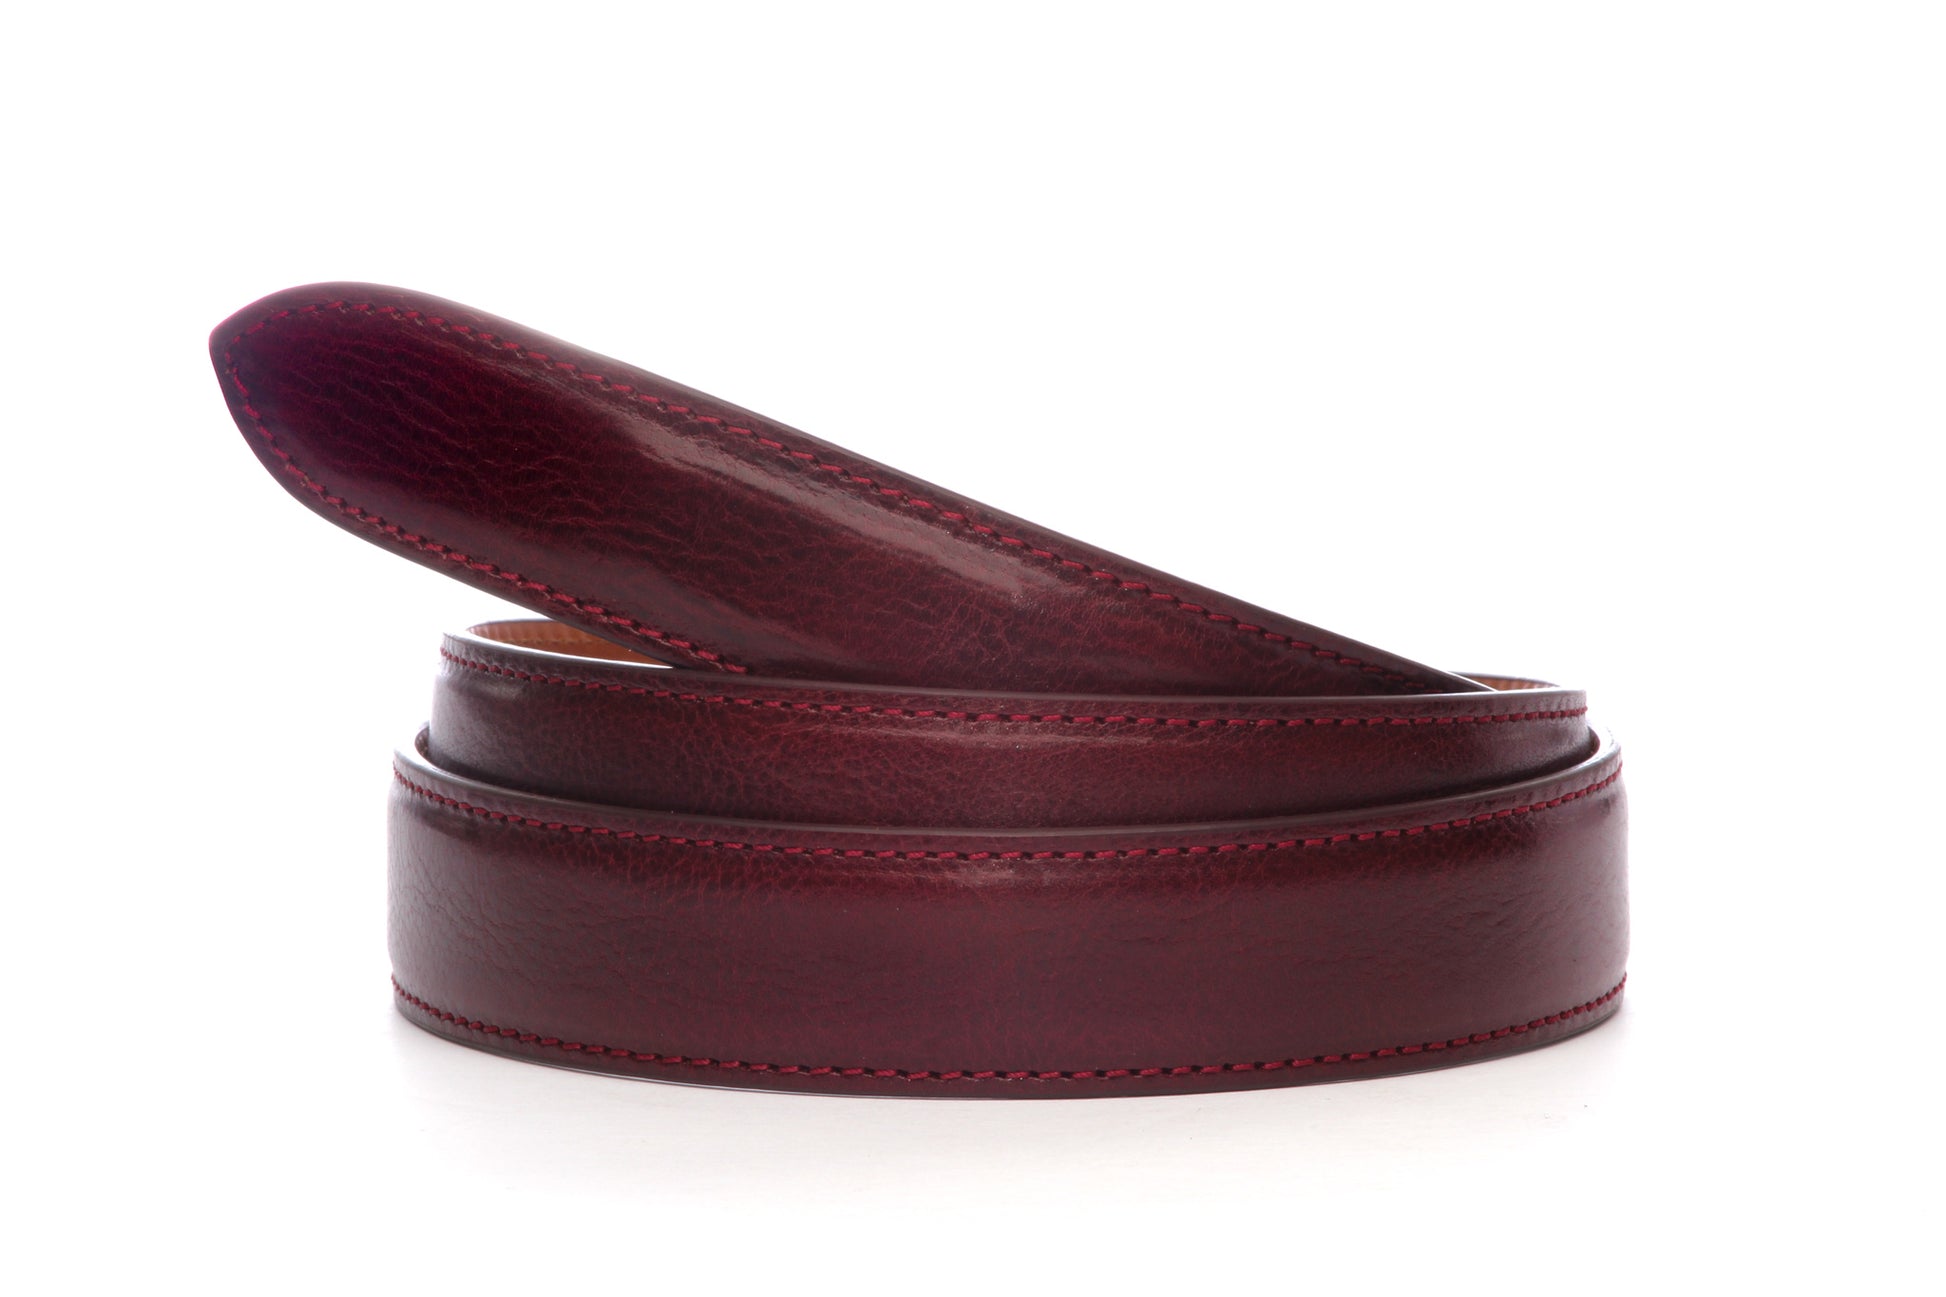 Men's Italian calfskin belt strap in merlot with a 1.25-inch width, formal look, full roll